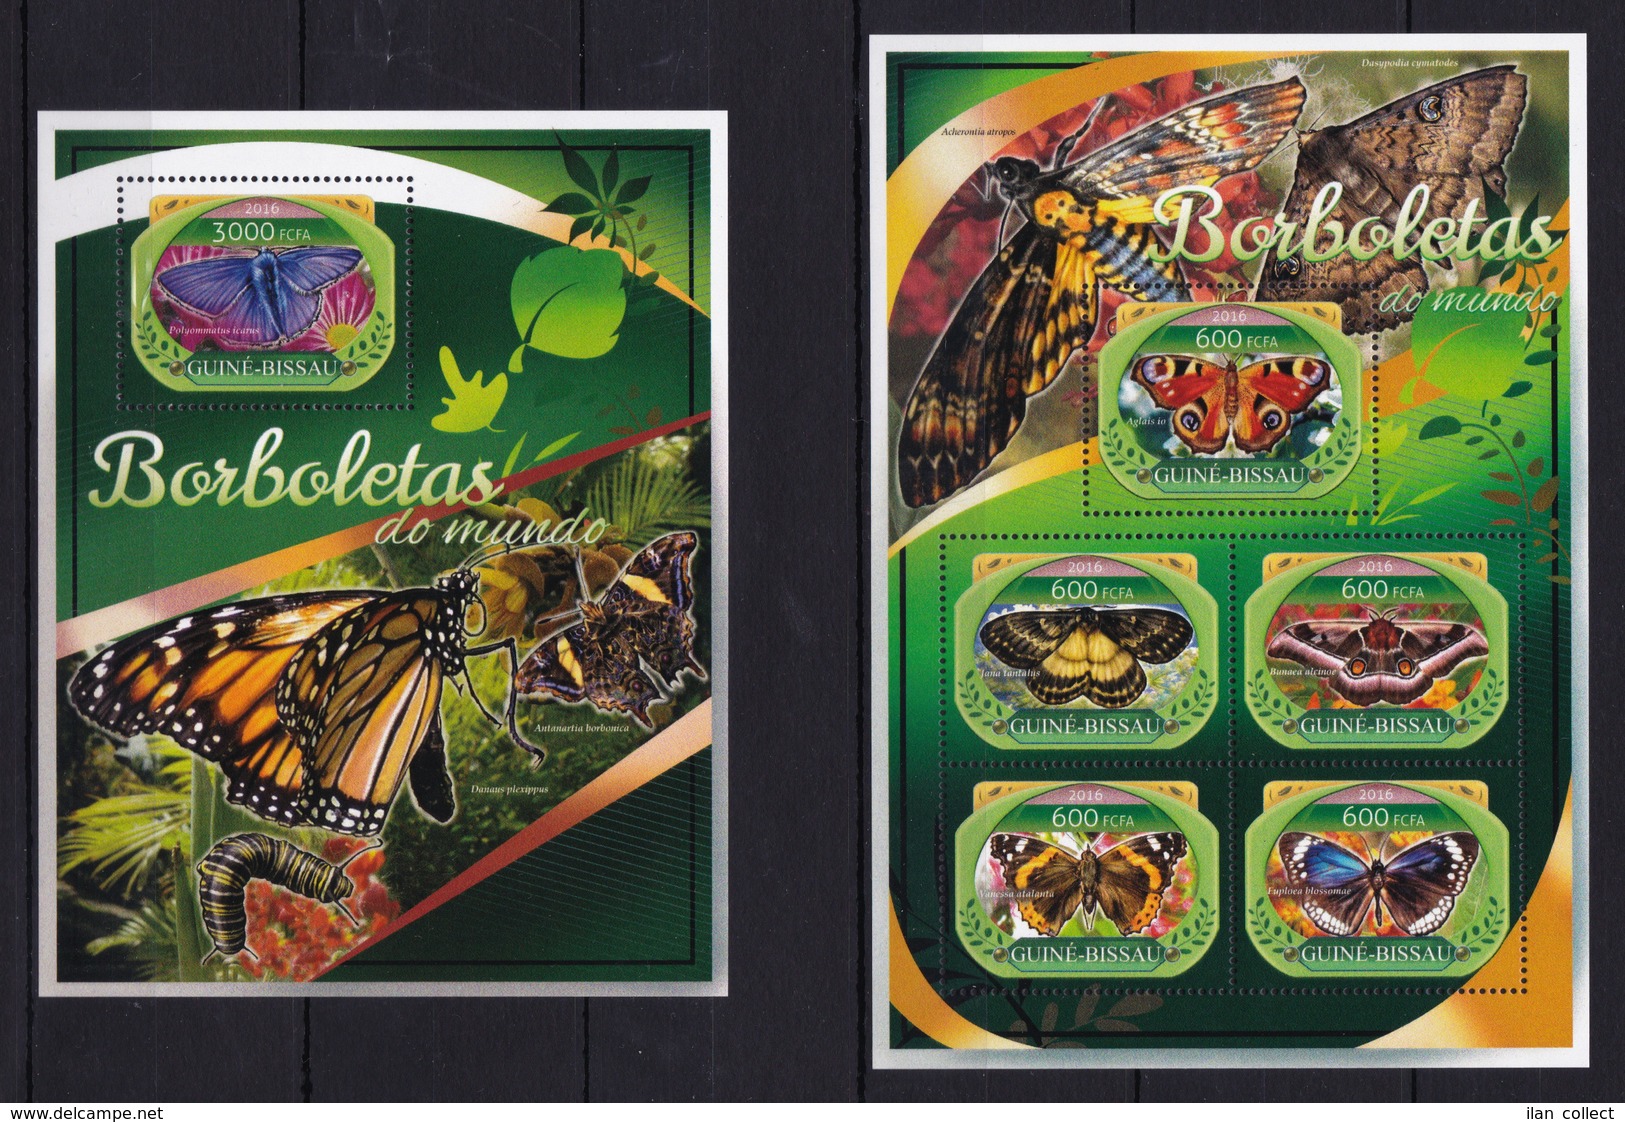 Guinea Bissau 2016 - Butterflies Borbolettas Do Mundo - Stamps MNH** XG - Butterflies